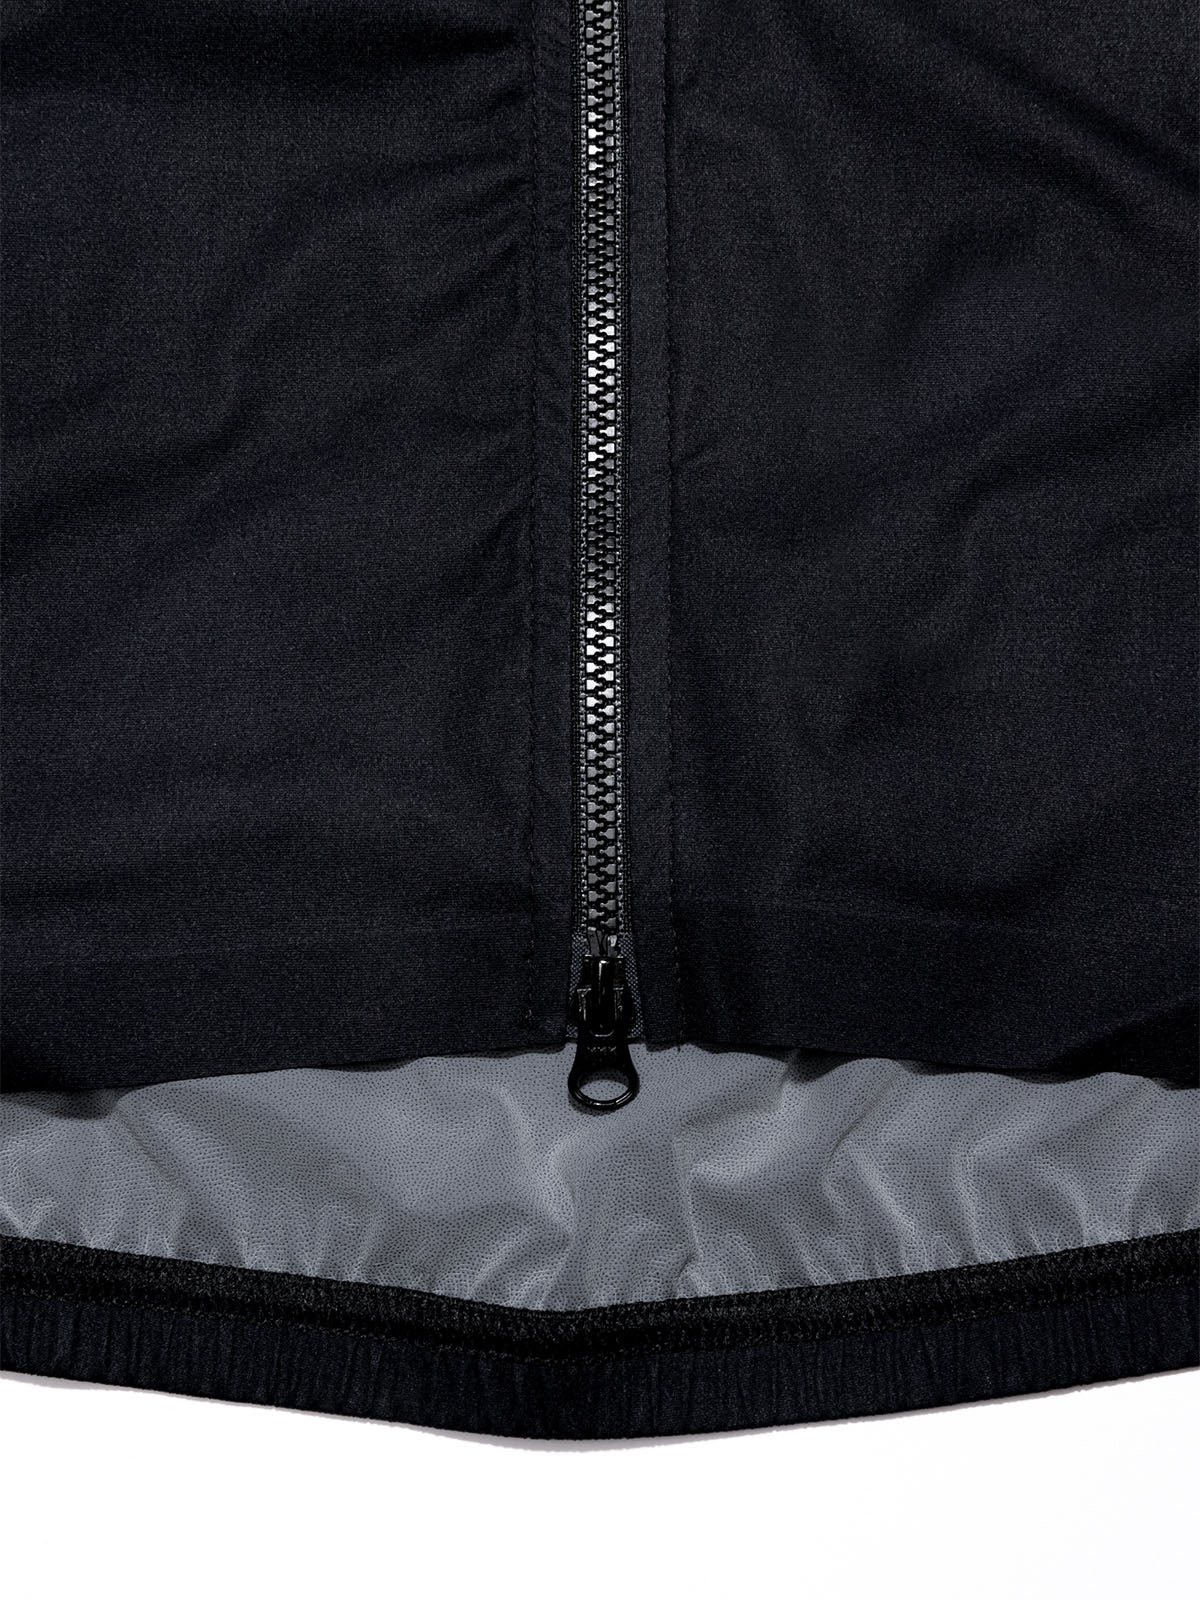 Altosphere Vest by Mission Workshop - Weatherproof Bags & Technical Apparel - San Francisco & Los Angeles - Construit pour durer - Garanti pour toujours